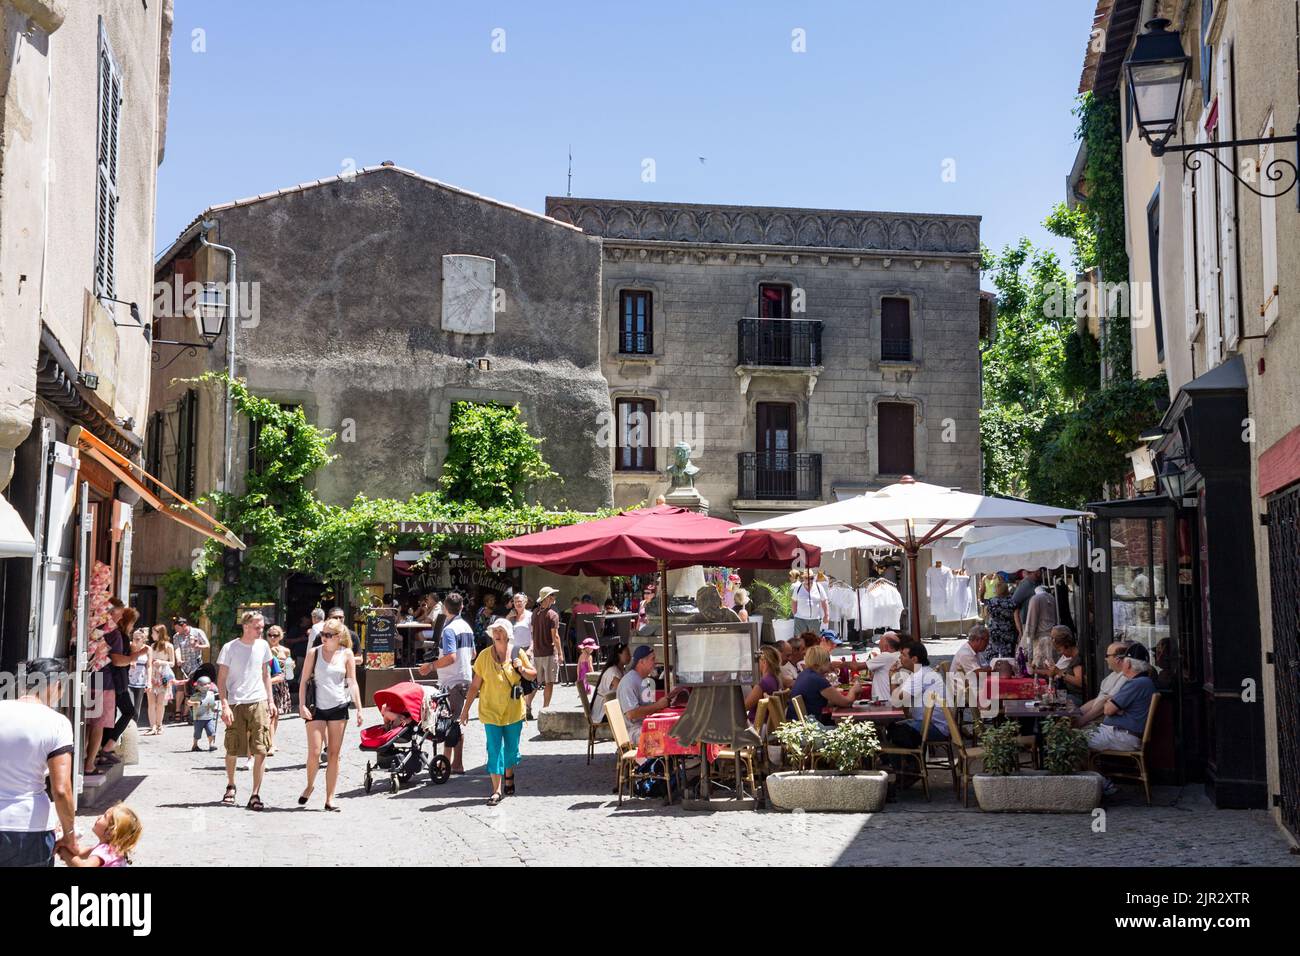 Les bâtiments historiques à l'intérieur des murs de la ville de Carcassonne, France Banque D'Images